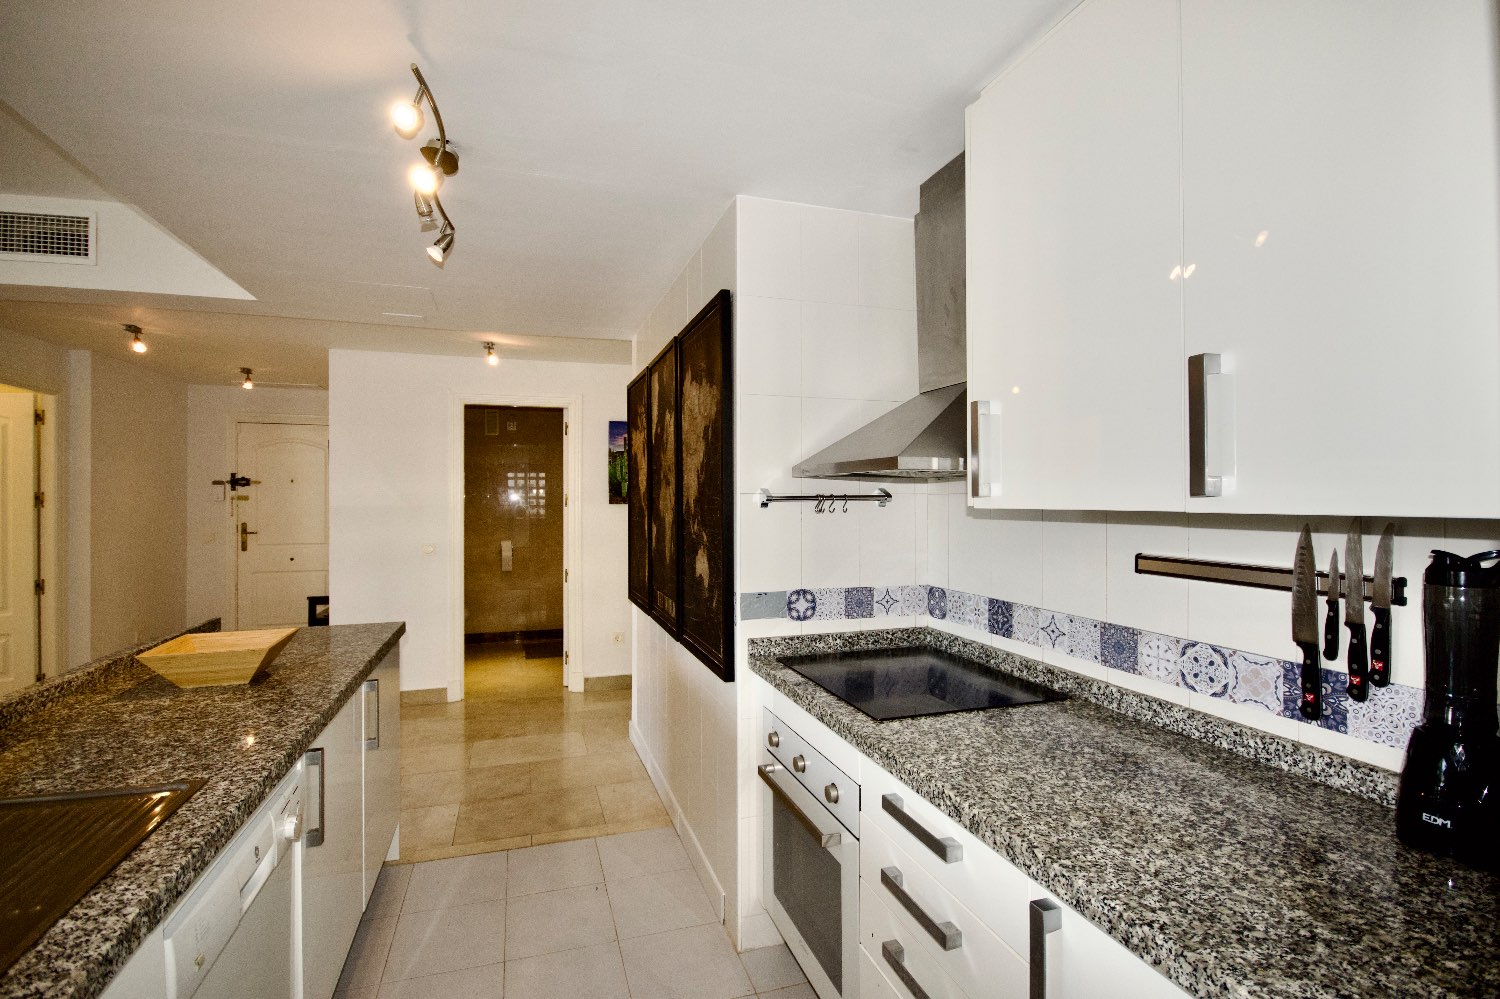 Grand appartement dans le village de Duquesa - Manilva - Malaga - Costa del Sol